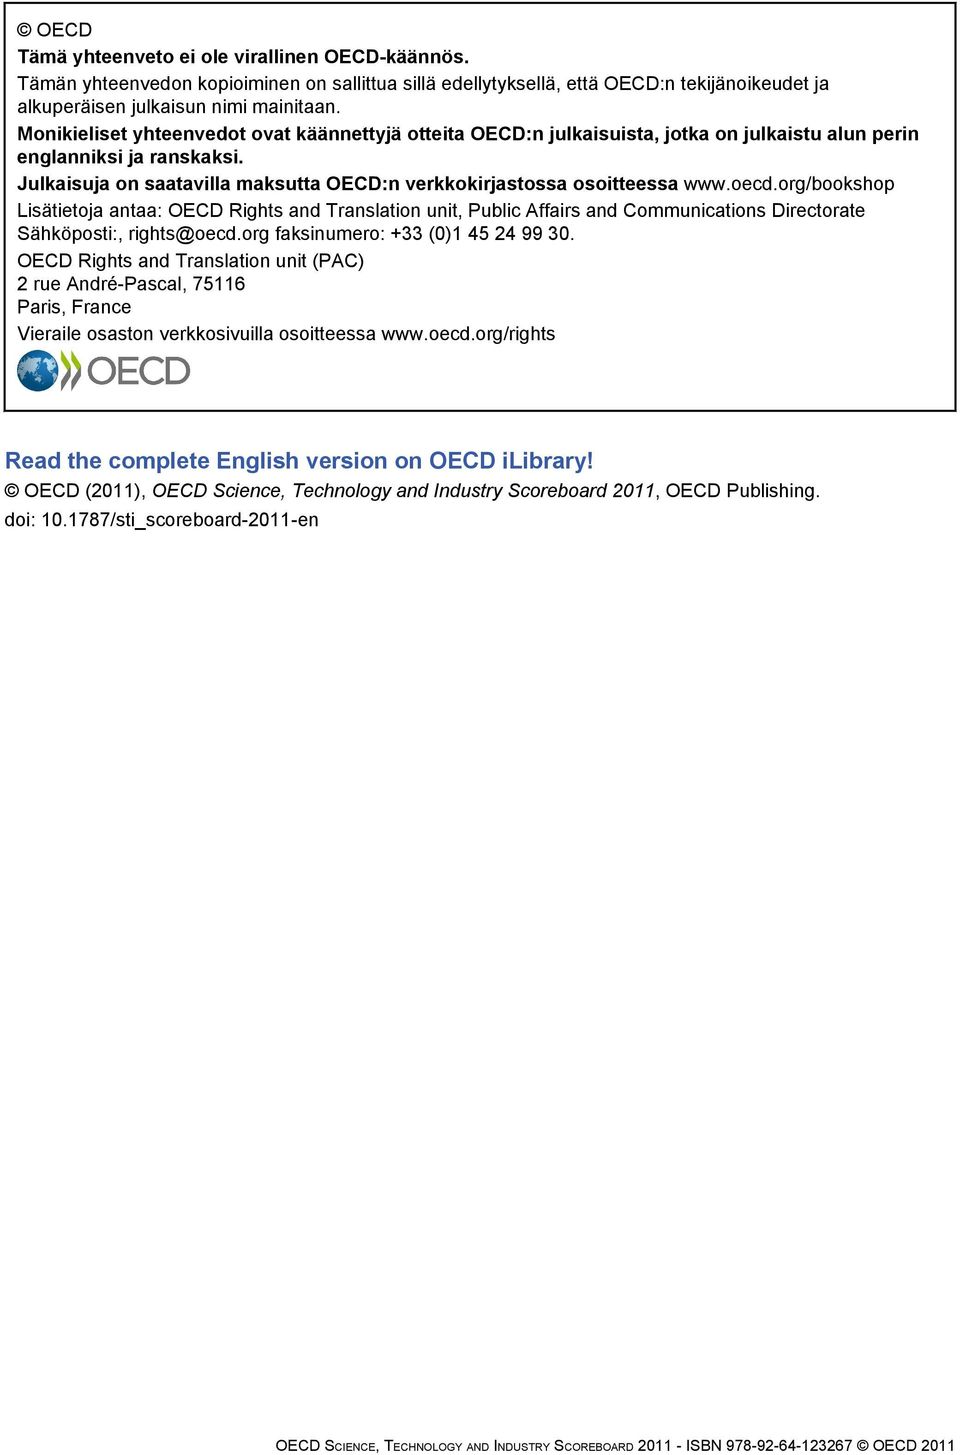 Julkaisuja on saatavilla maksutta OECD:n verkkokirjastossa osoitteessa www.oecd.